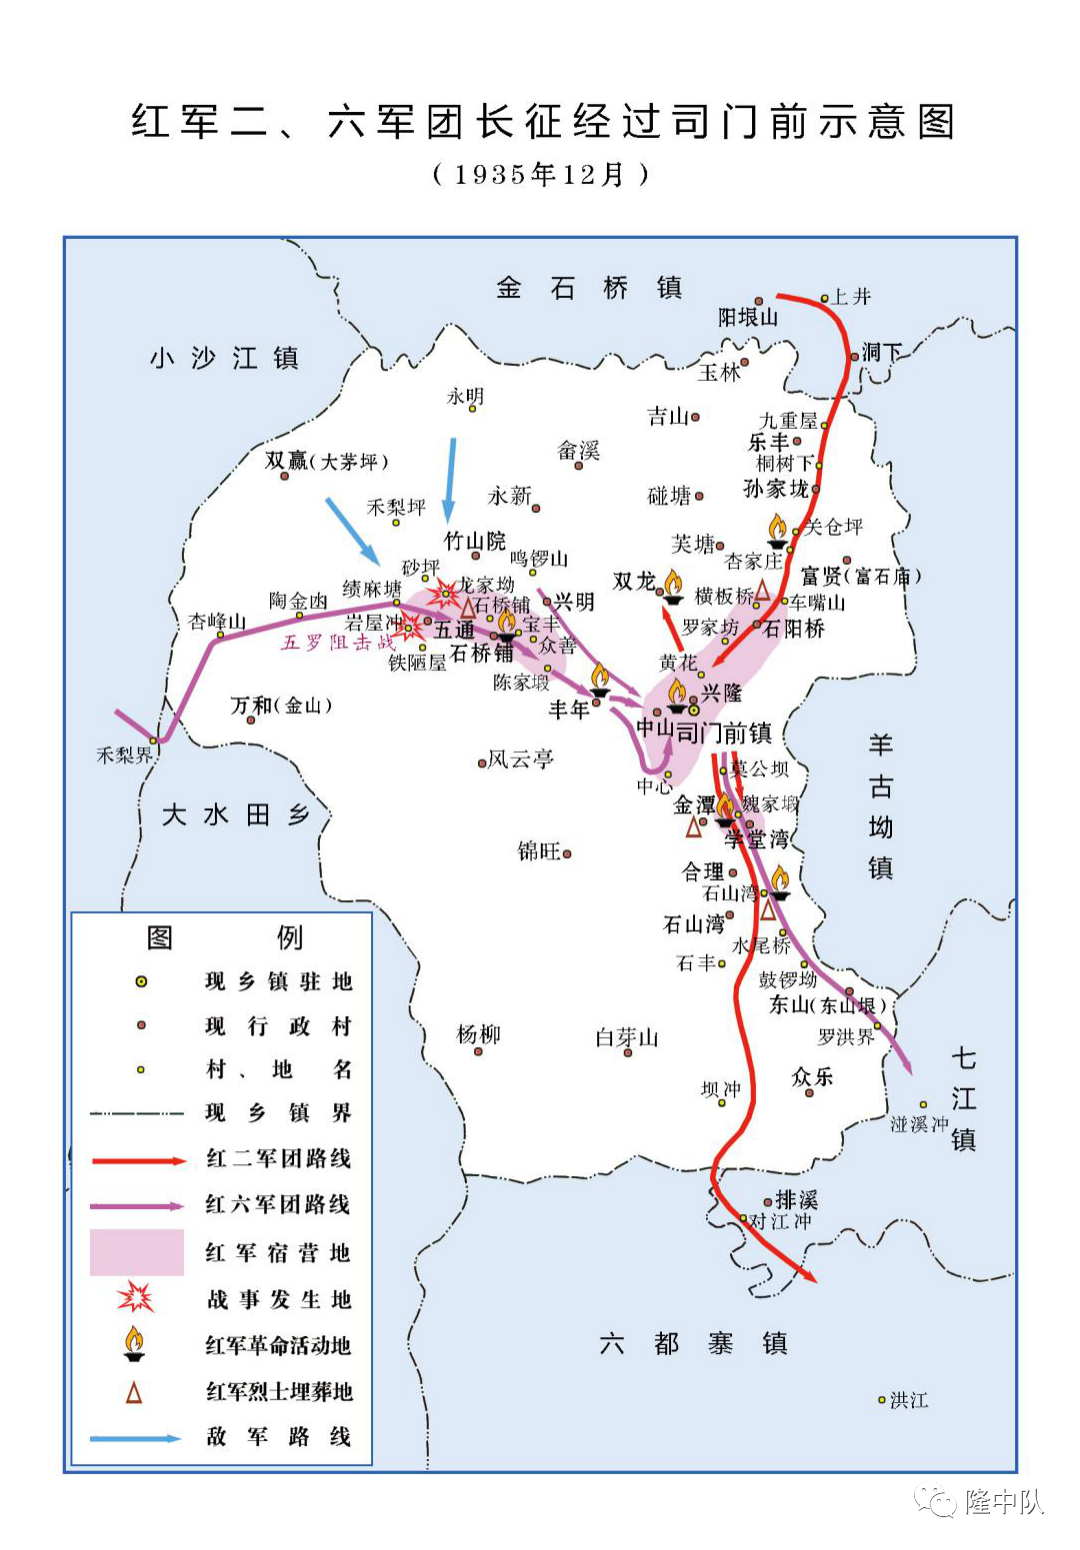 隆回县高清地图图片